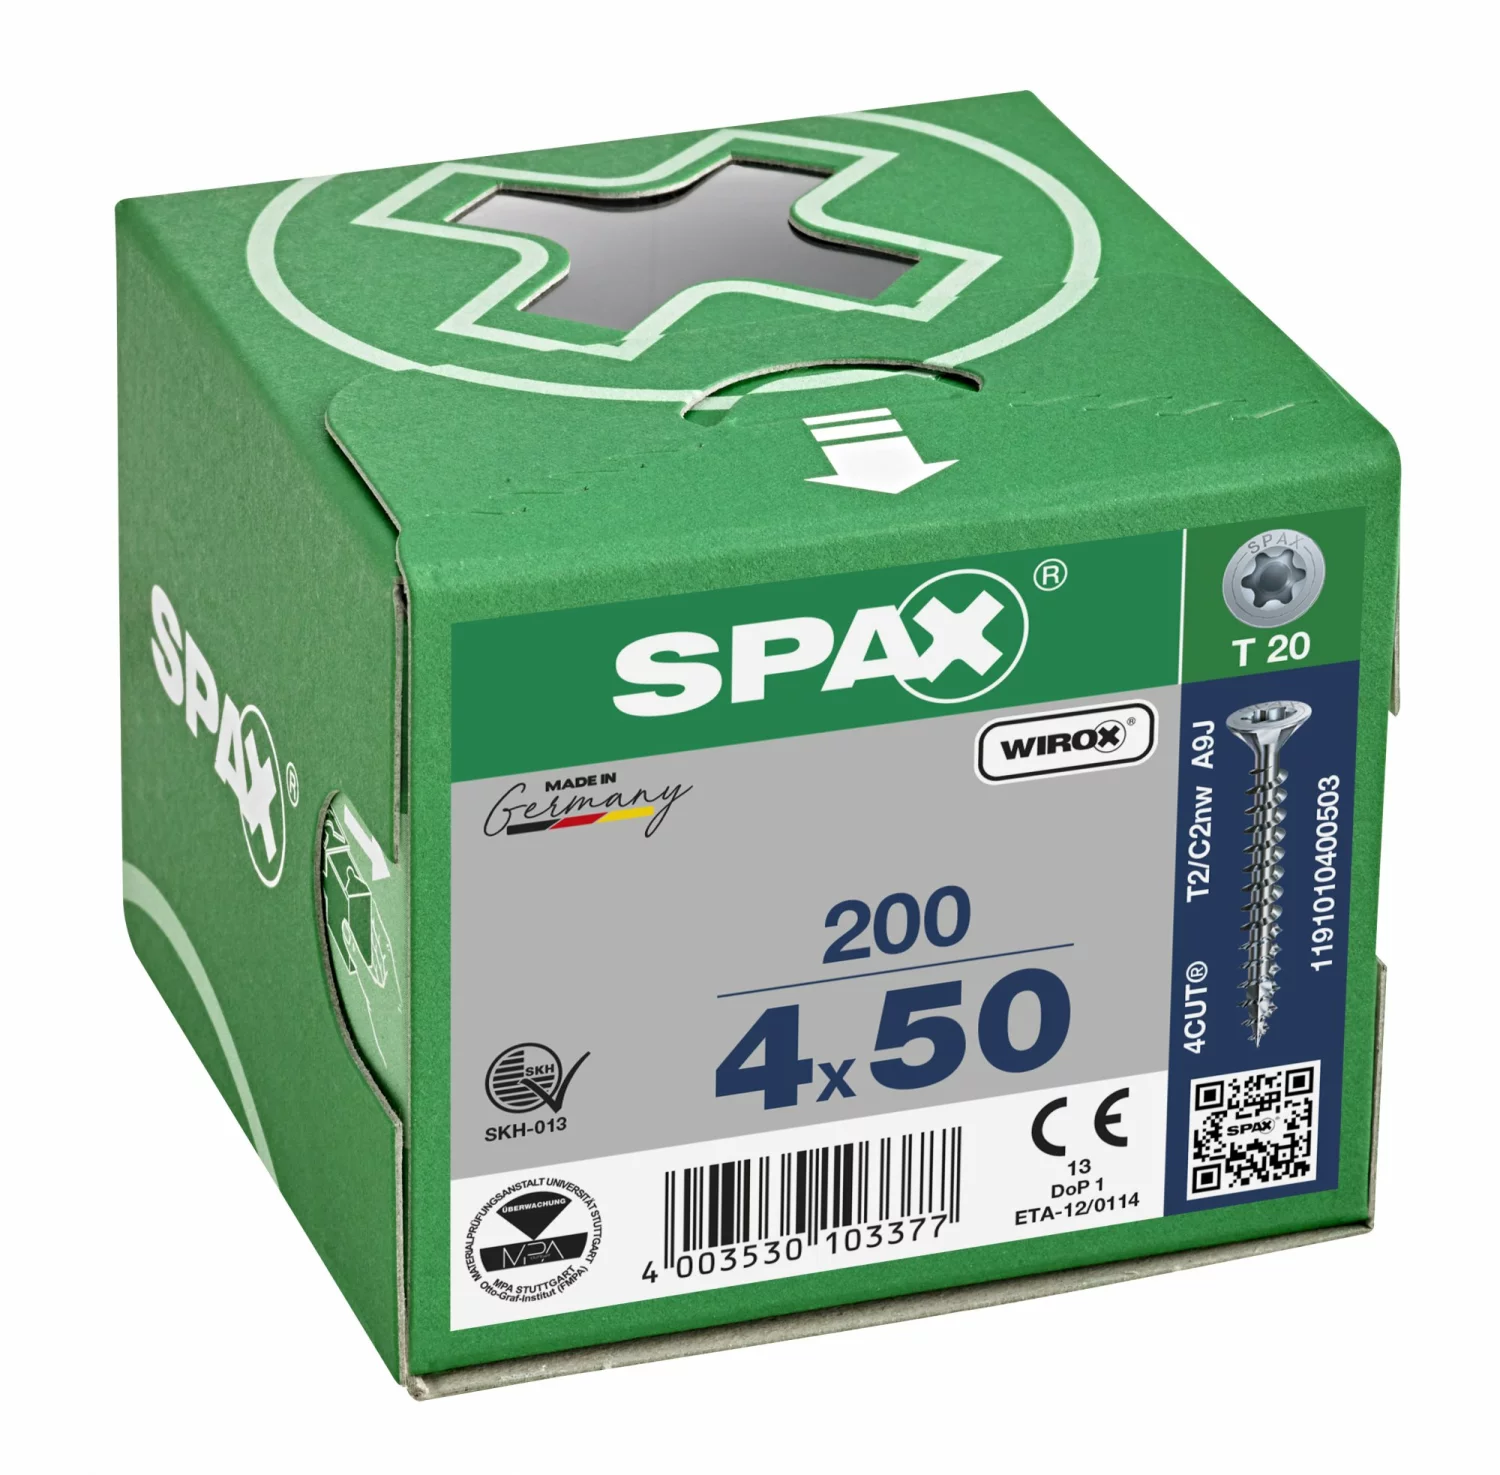 SPAX 1191010400503 Universele schroef, Verzonken kop, 4 x 50, Voldraad, T-STAR plus T20 - WIROX - 200 stuks